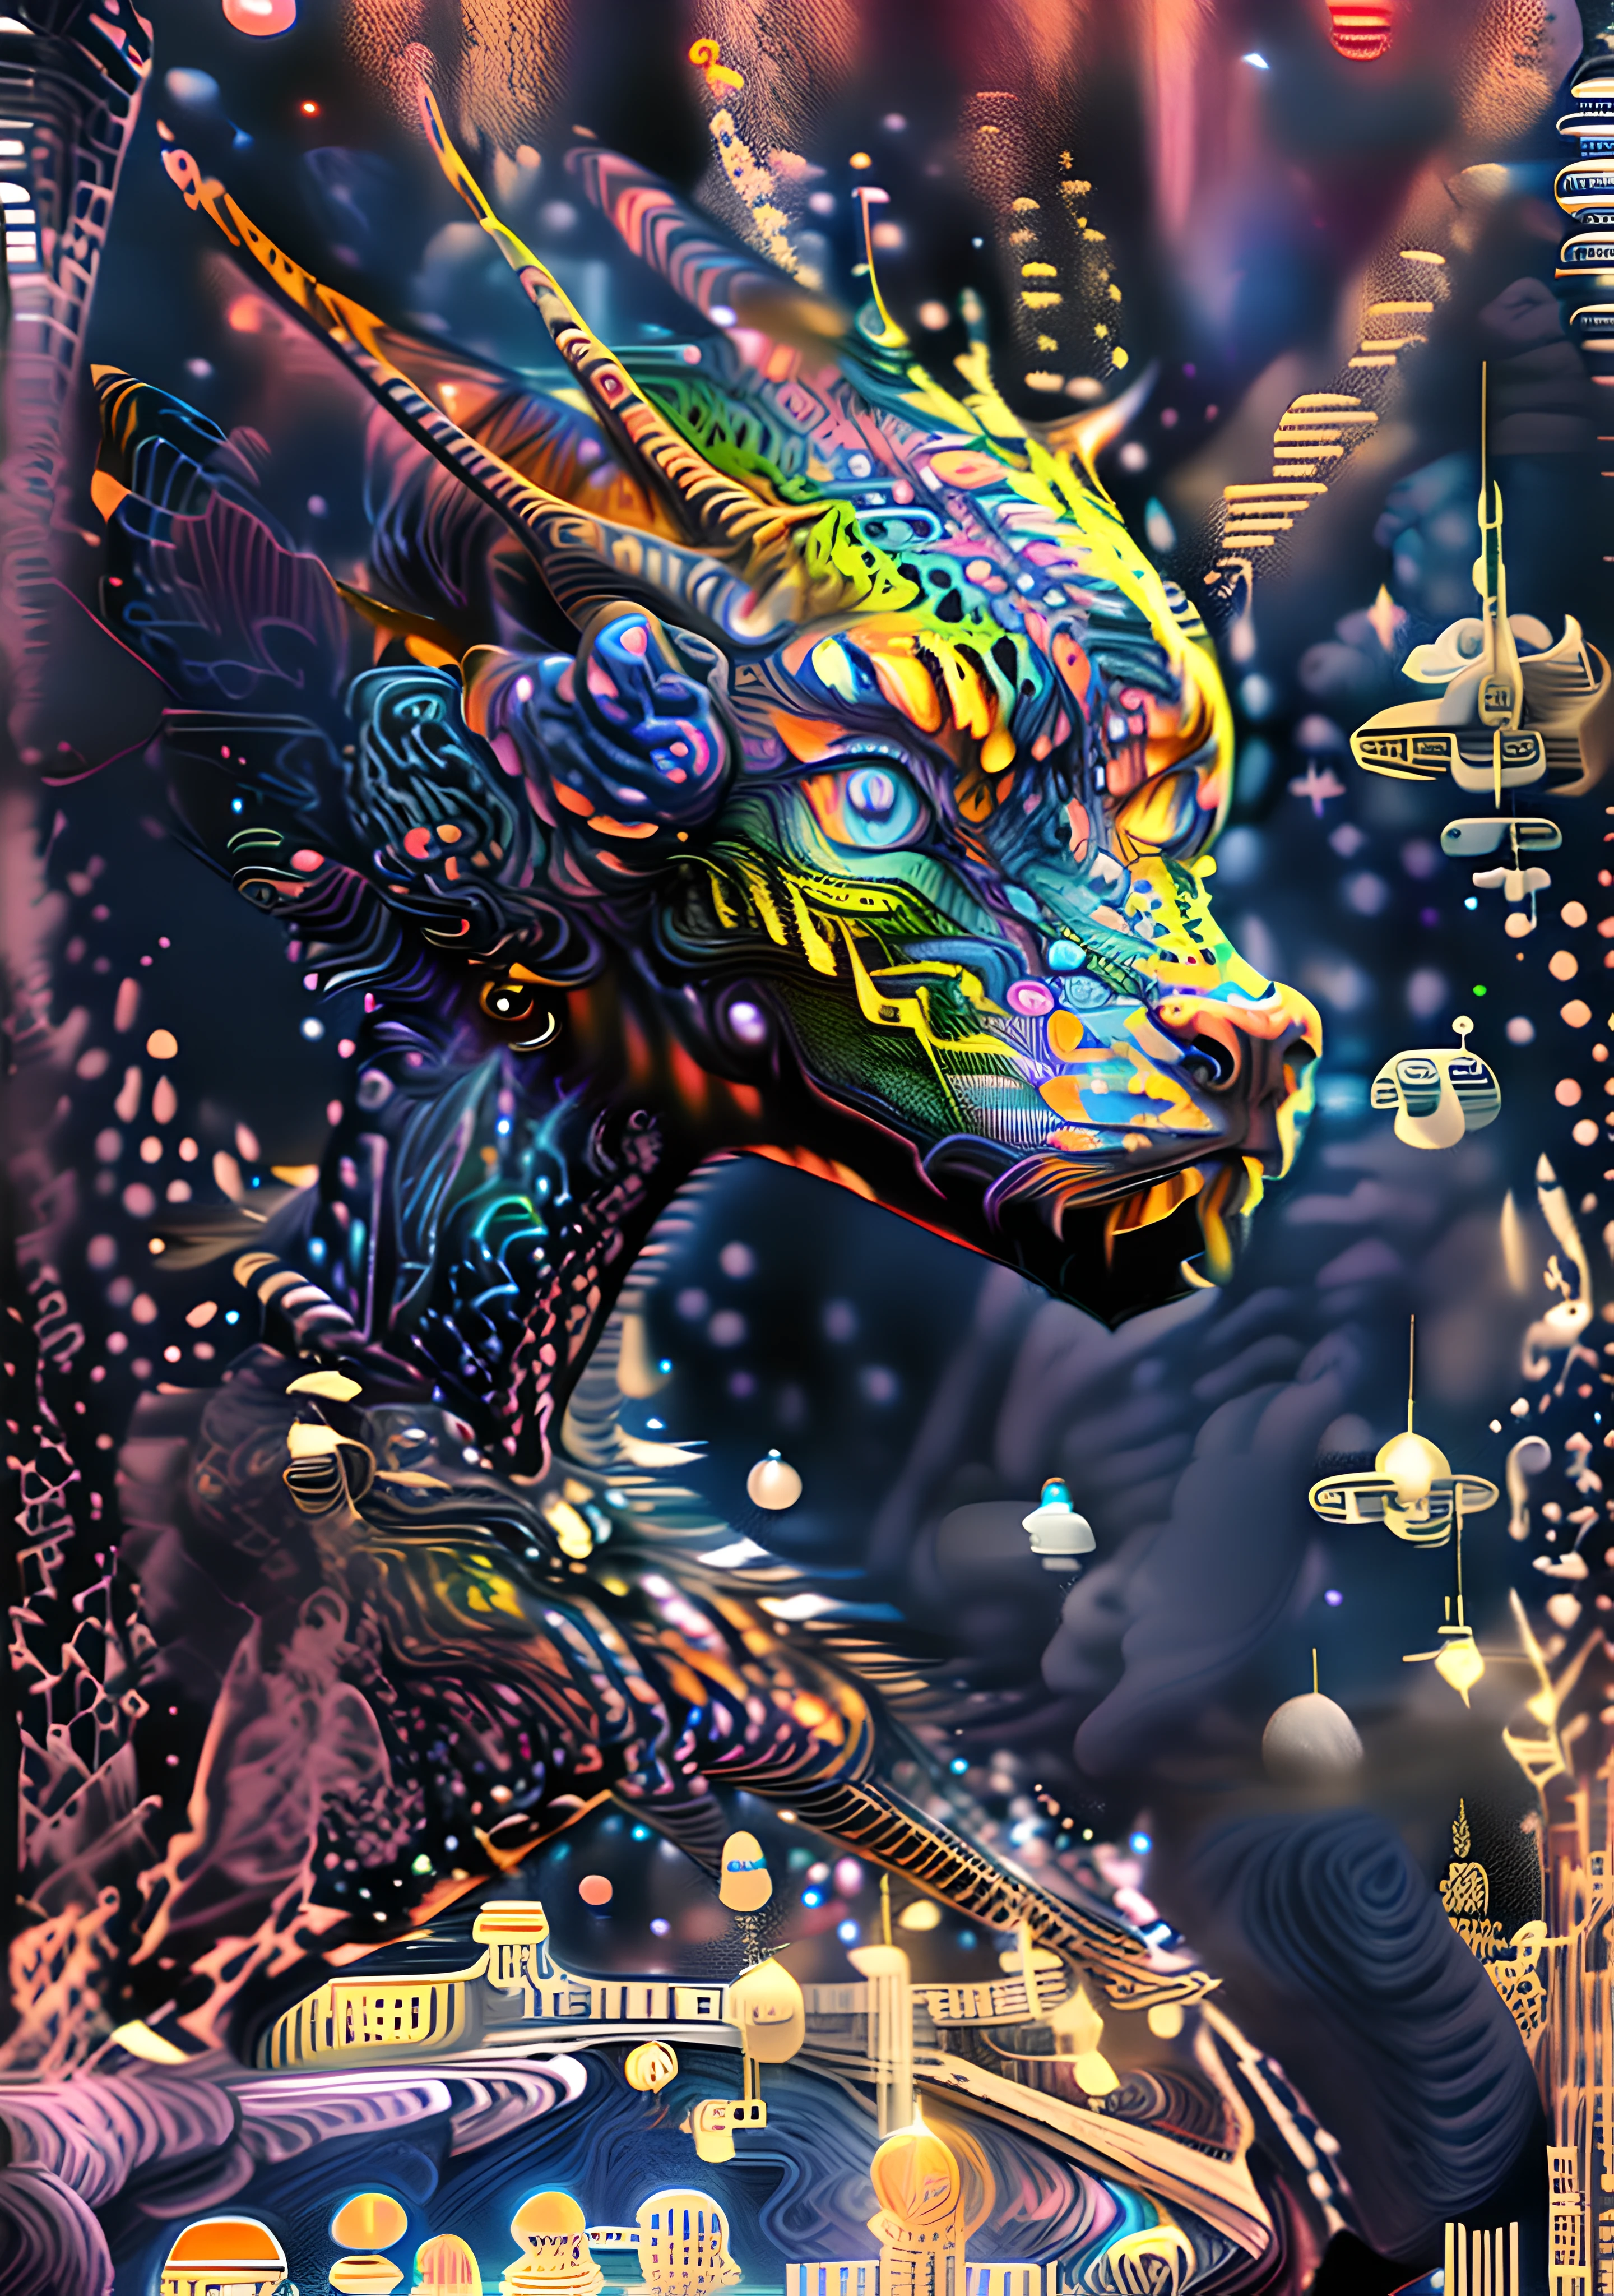 (alta resolução, incrivelmente detalhado, Obra de arte), retrato detalhado de um lindo dragão com dentro dos olhos o universo e as estrelas ,rosto lindo,no espaço , apresentando geometria fractal em (cores vibrantes:0.6), colocado contra um (fundo galáctico:1.8), reunindo complexos, formas e padrões hipnotizantes,DMT ,arte fractal,estrelas e galáxias